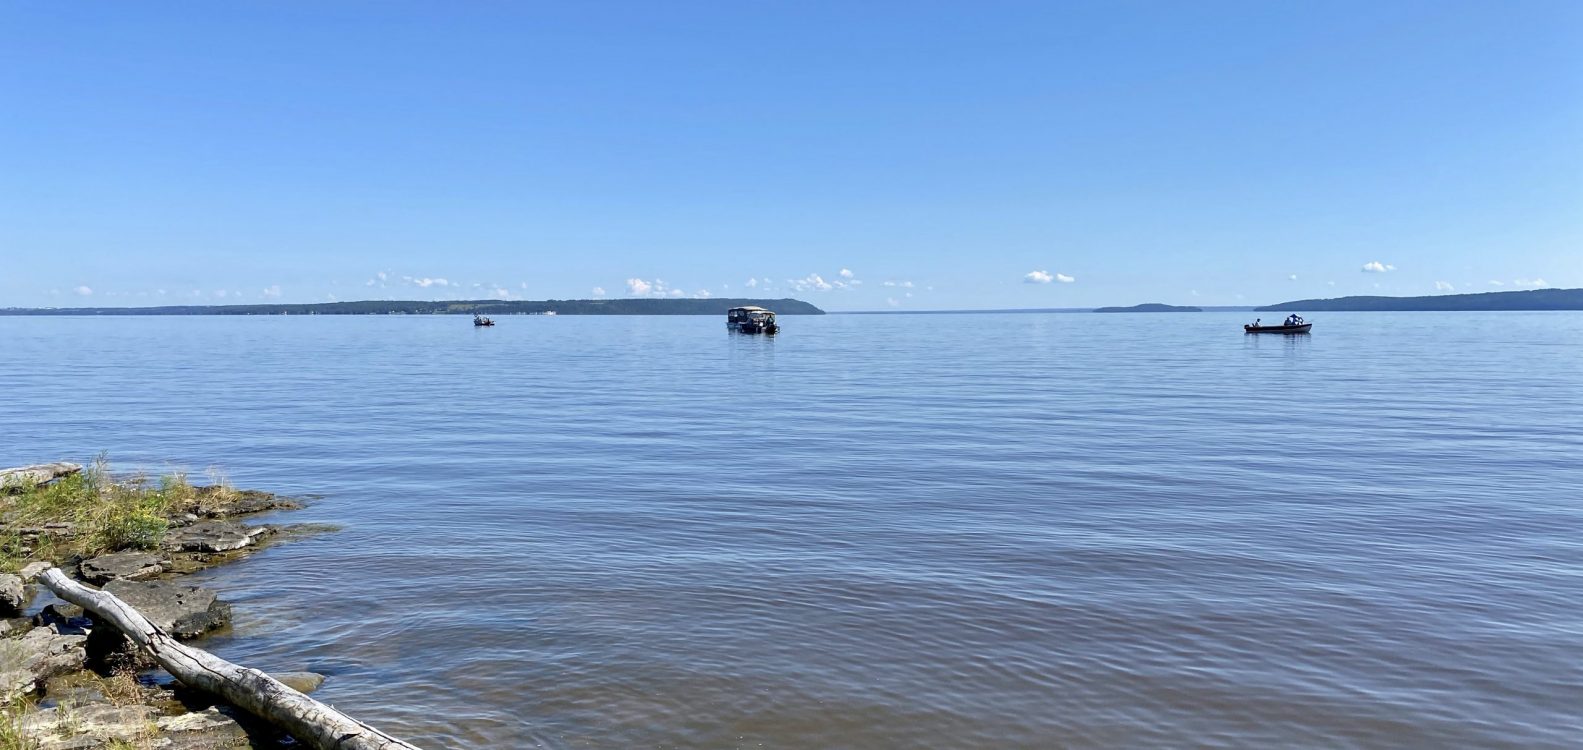 Bateaux de pêche du côté est de l'île Farr